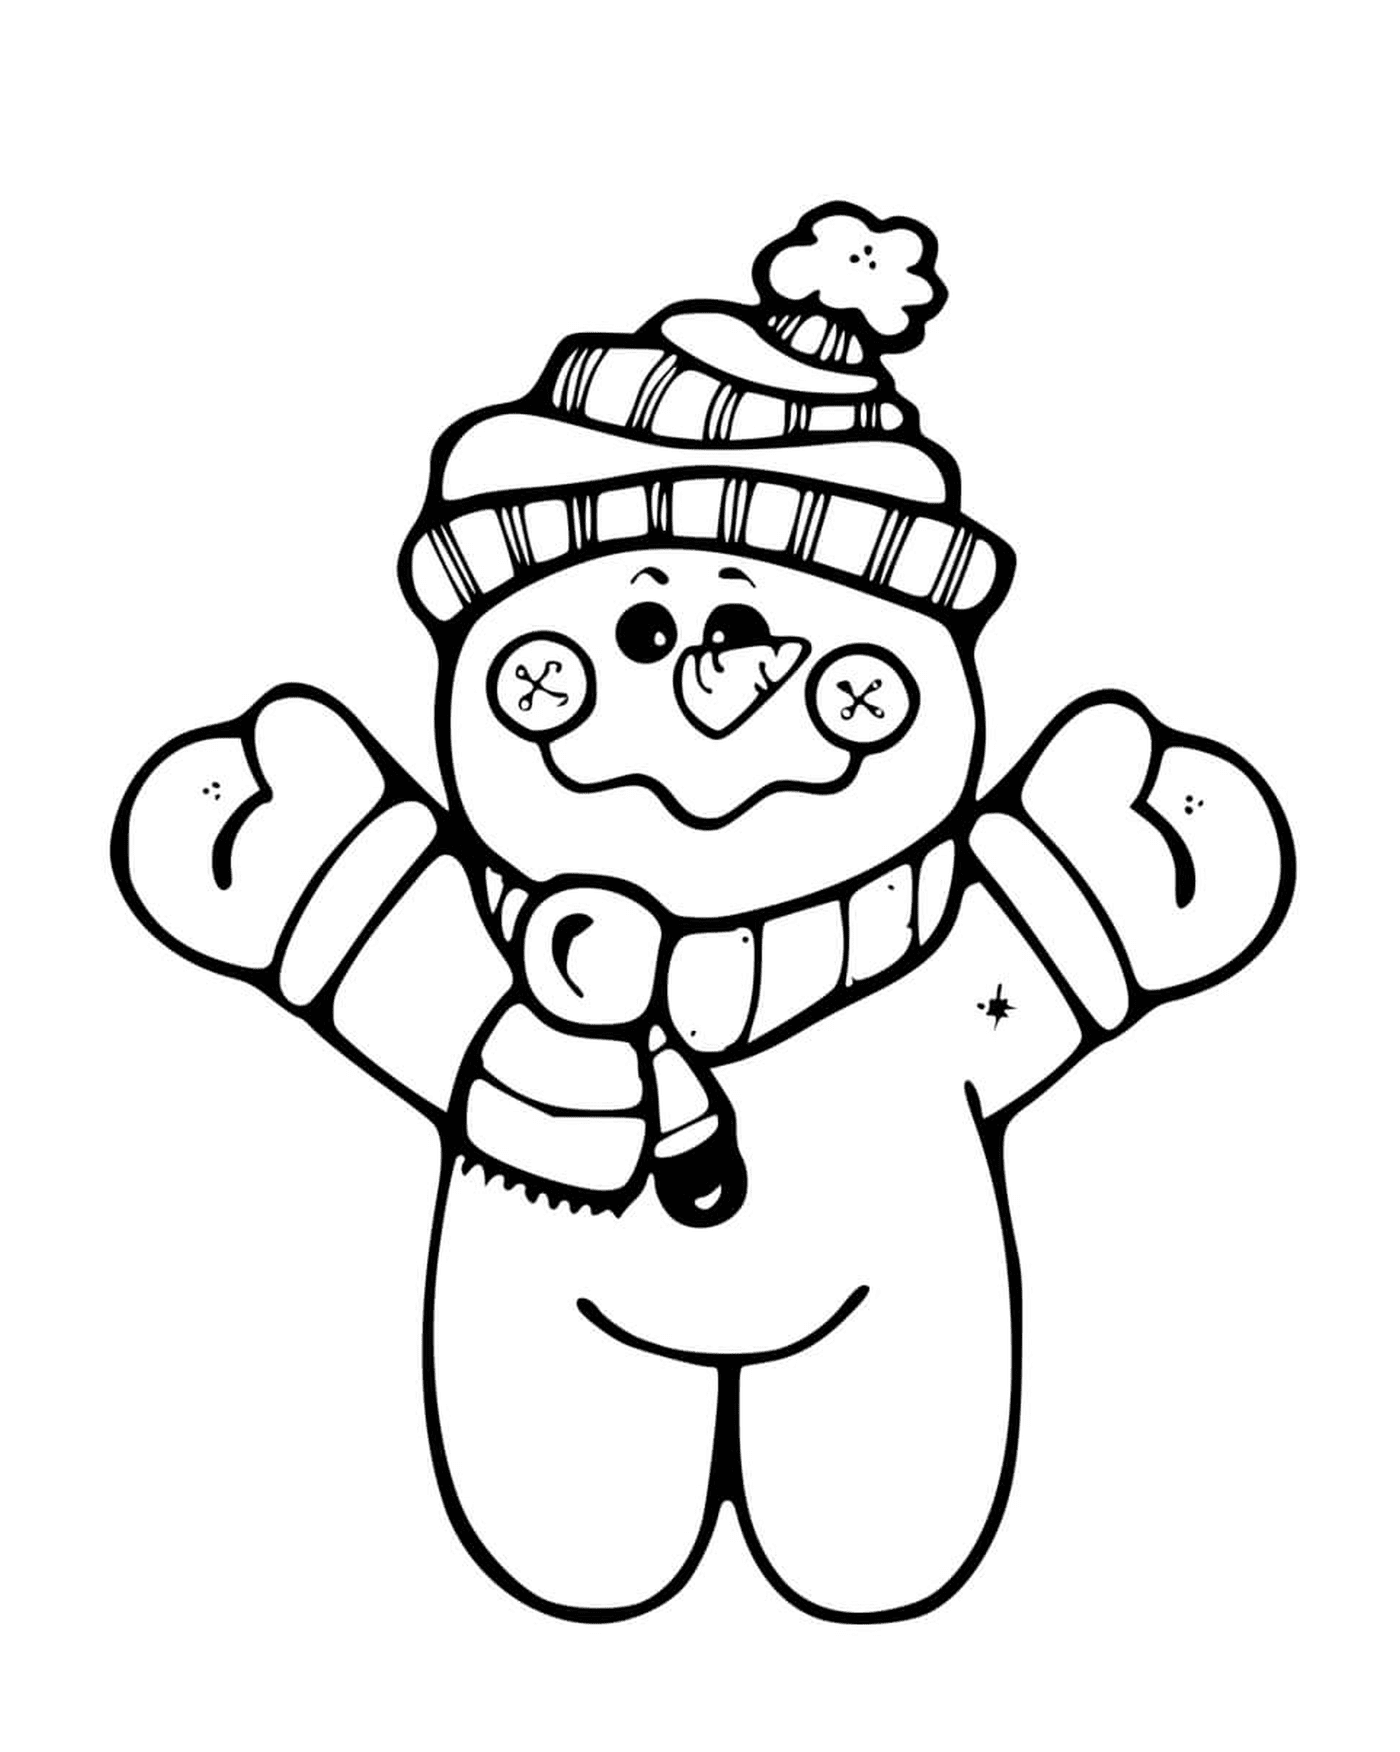   Petit bonhomme de neige debout, portant une tuque et une écharpe 